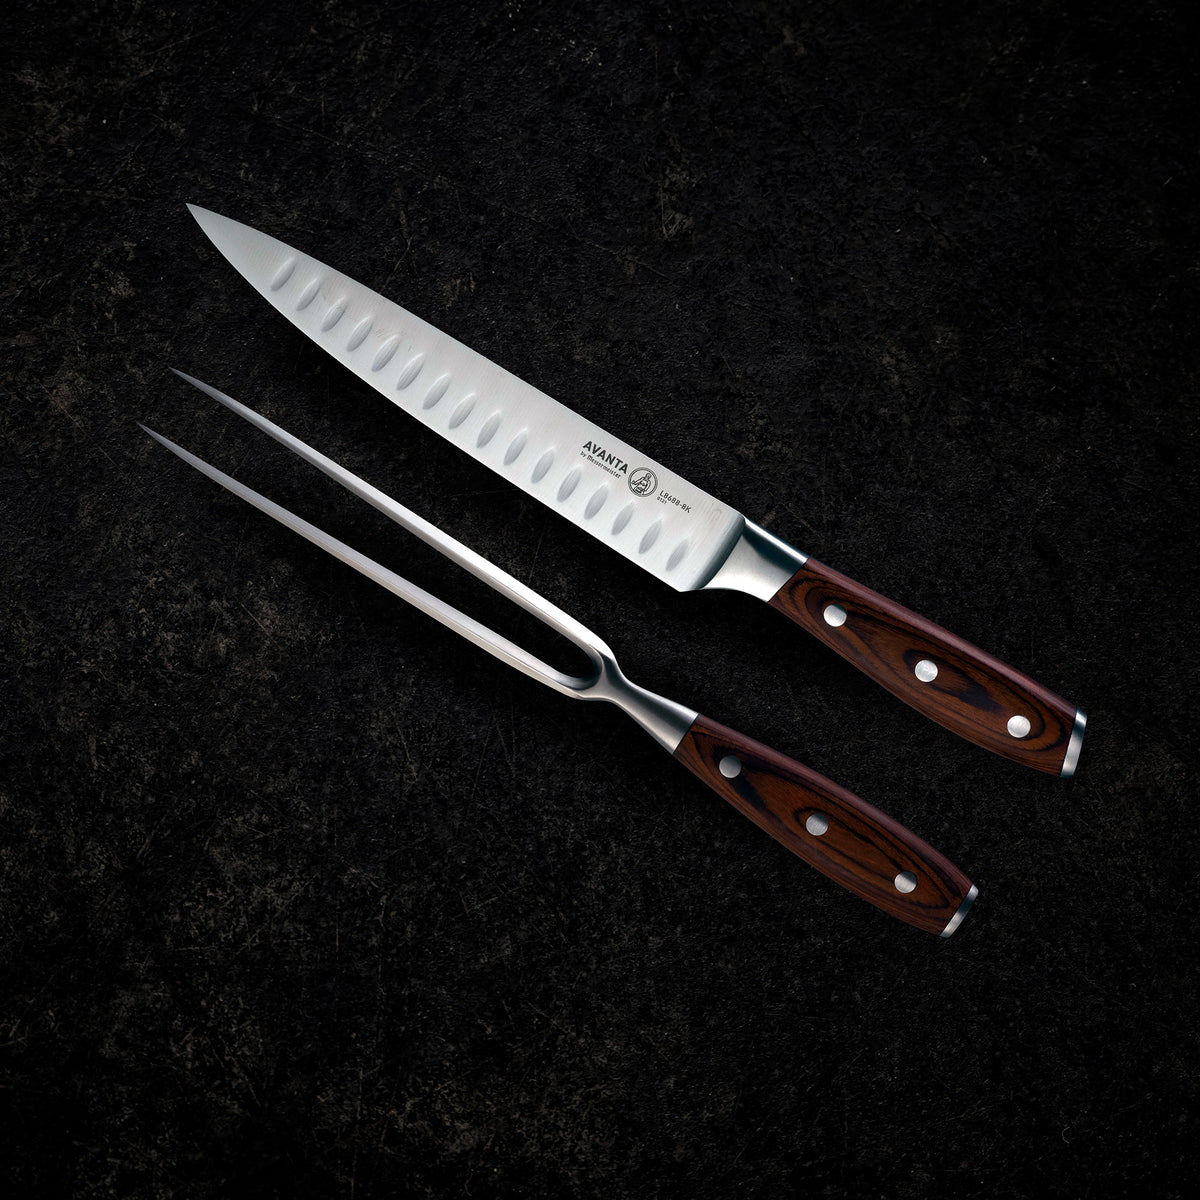 Precision Sharp in Non-Stick 13-Piece Knife Set